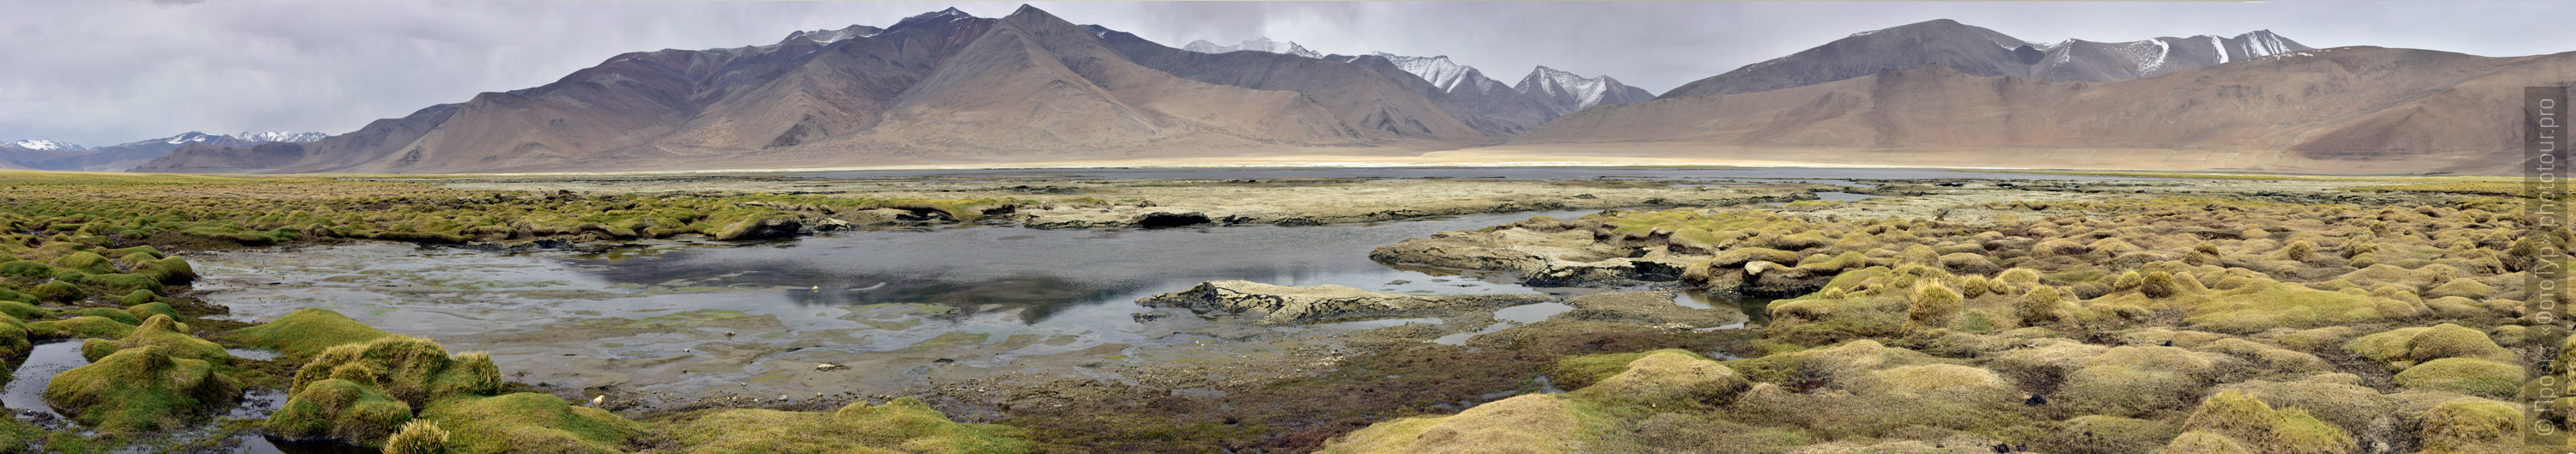 Озеро Стартсапак Тсо, Ладакх. Фототуры по Малому Тибету.